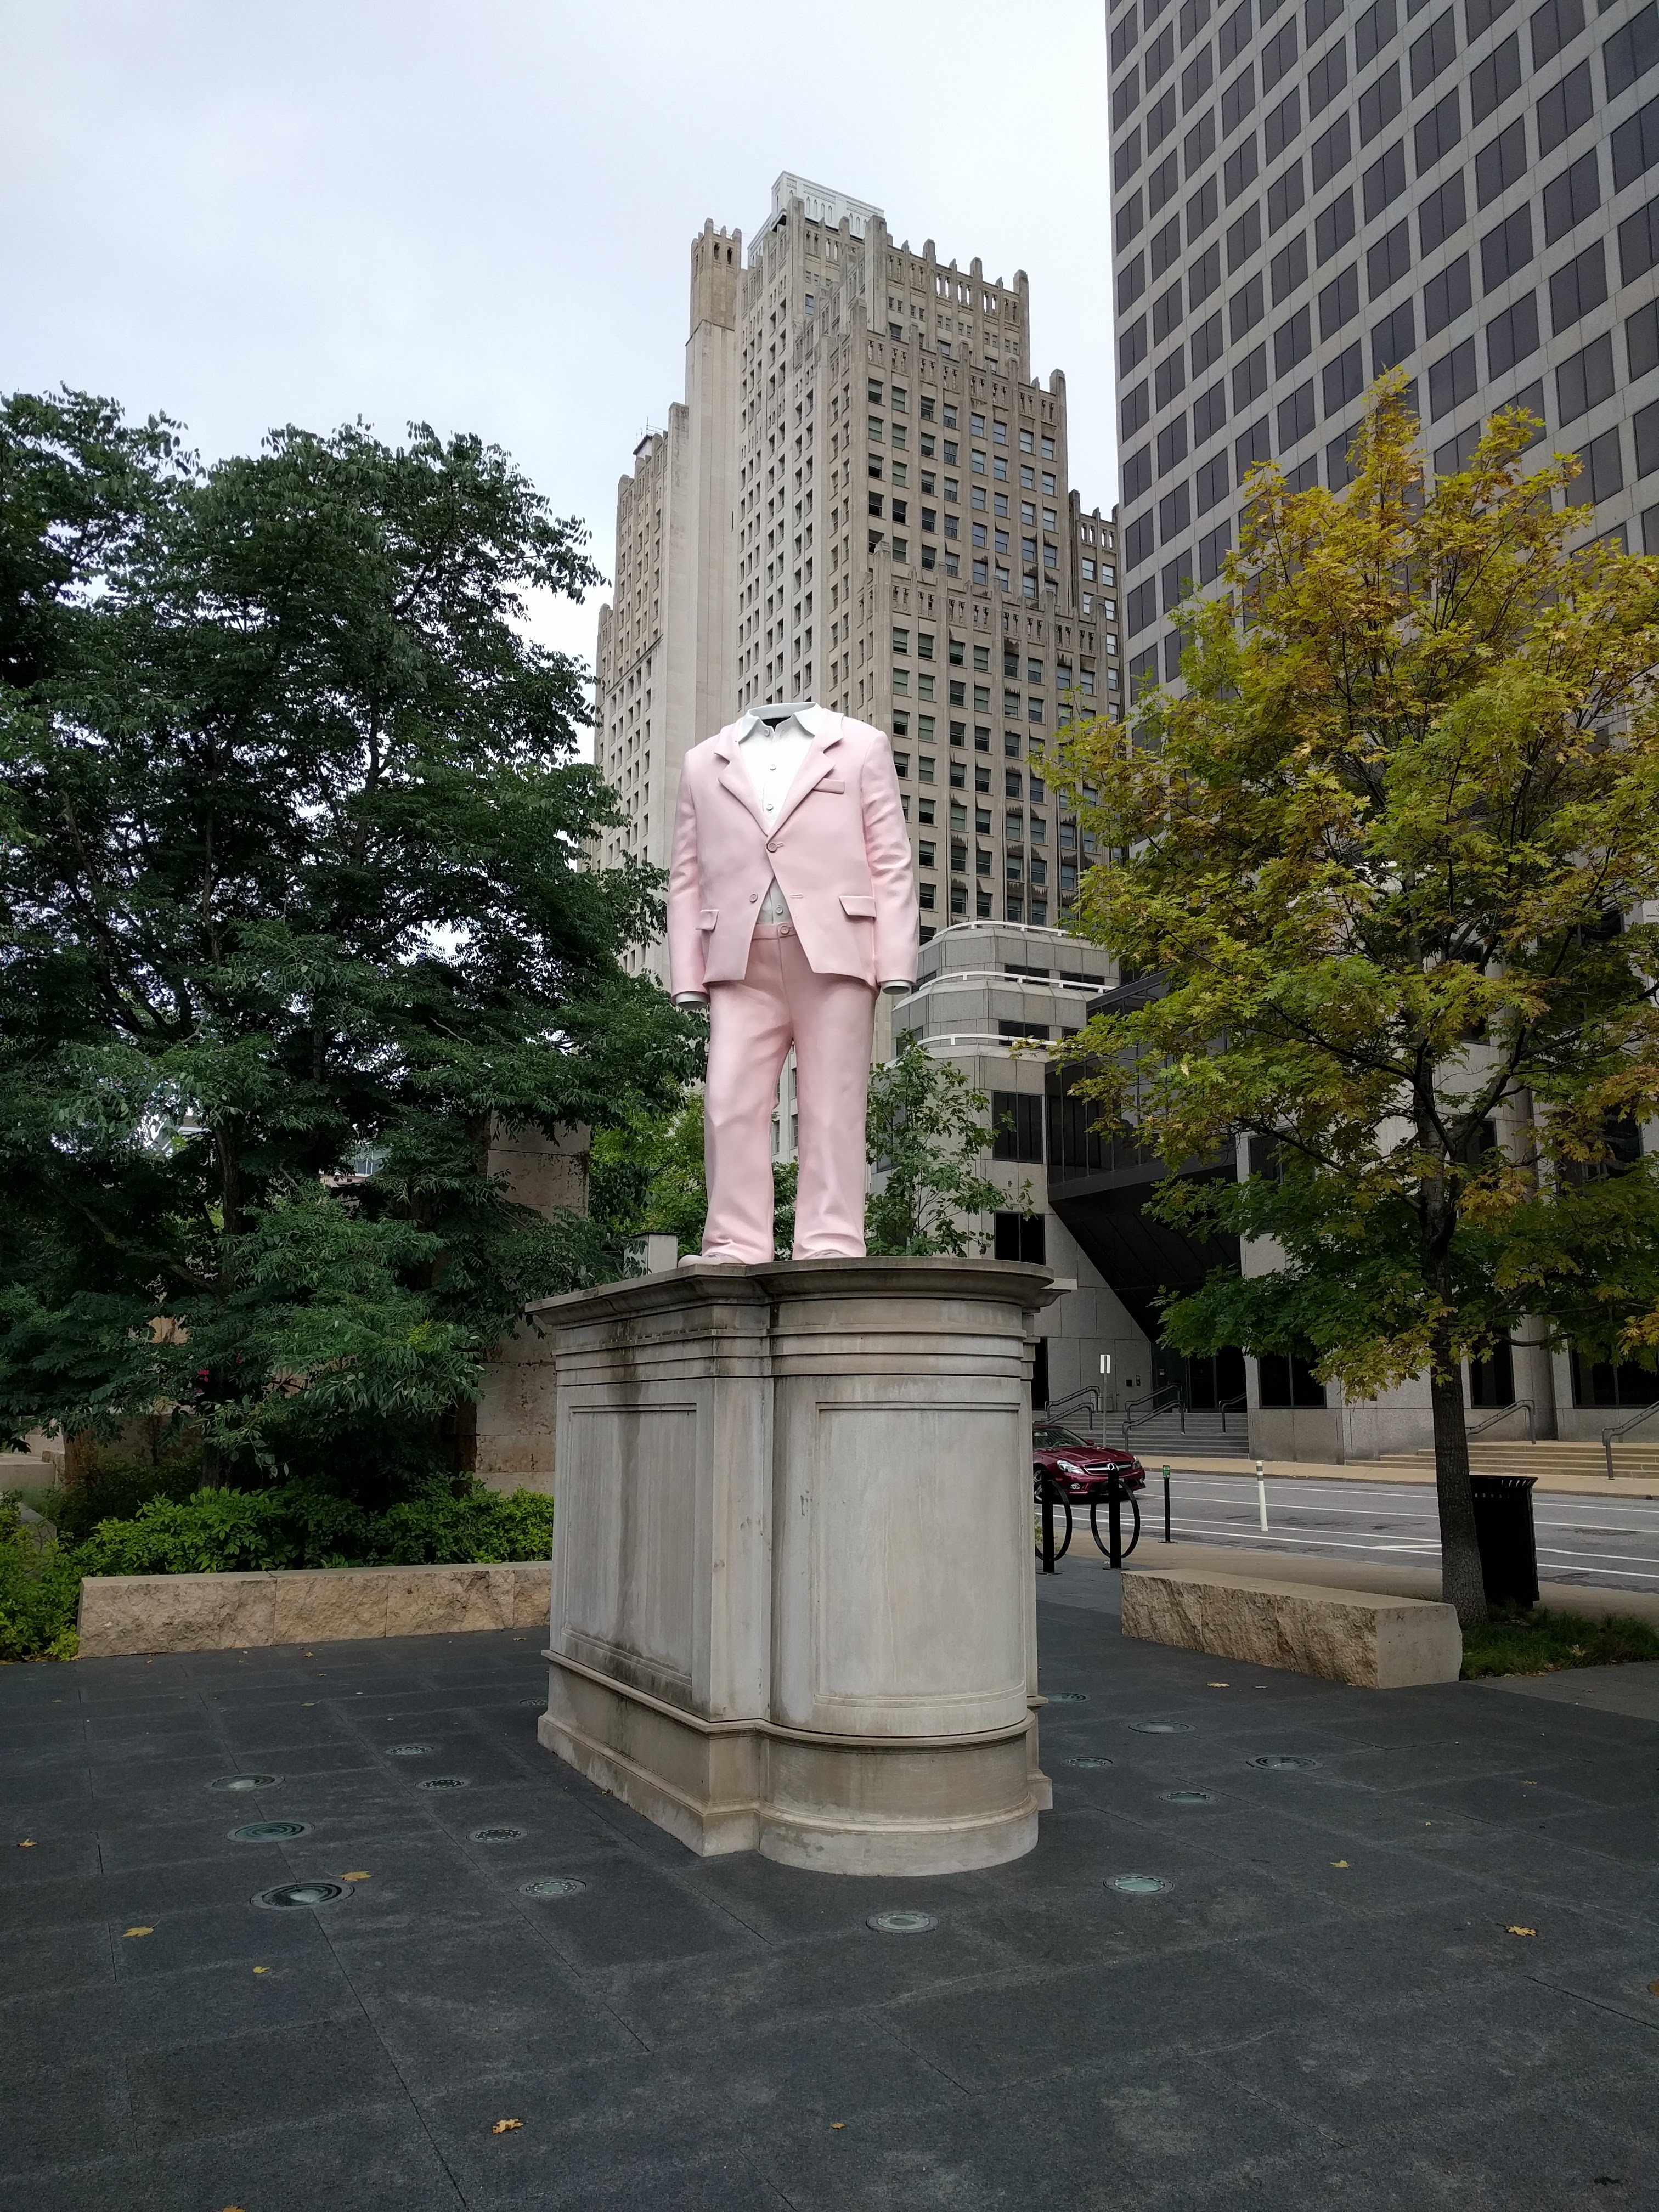 Statue of heaadless suit in Citygarden